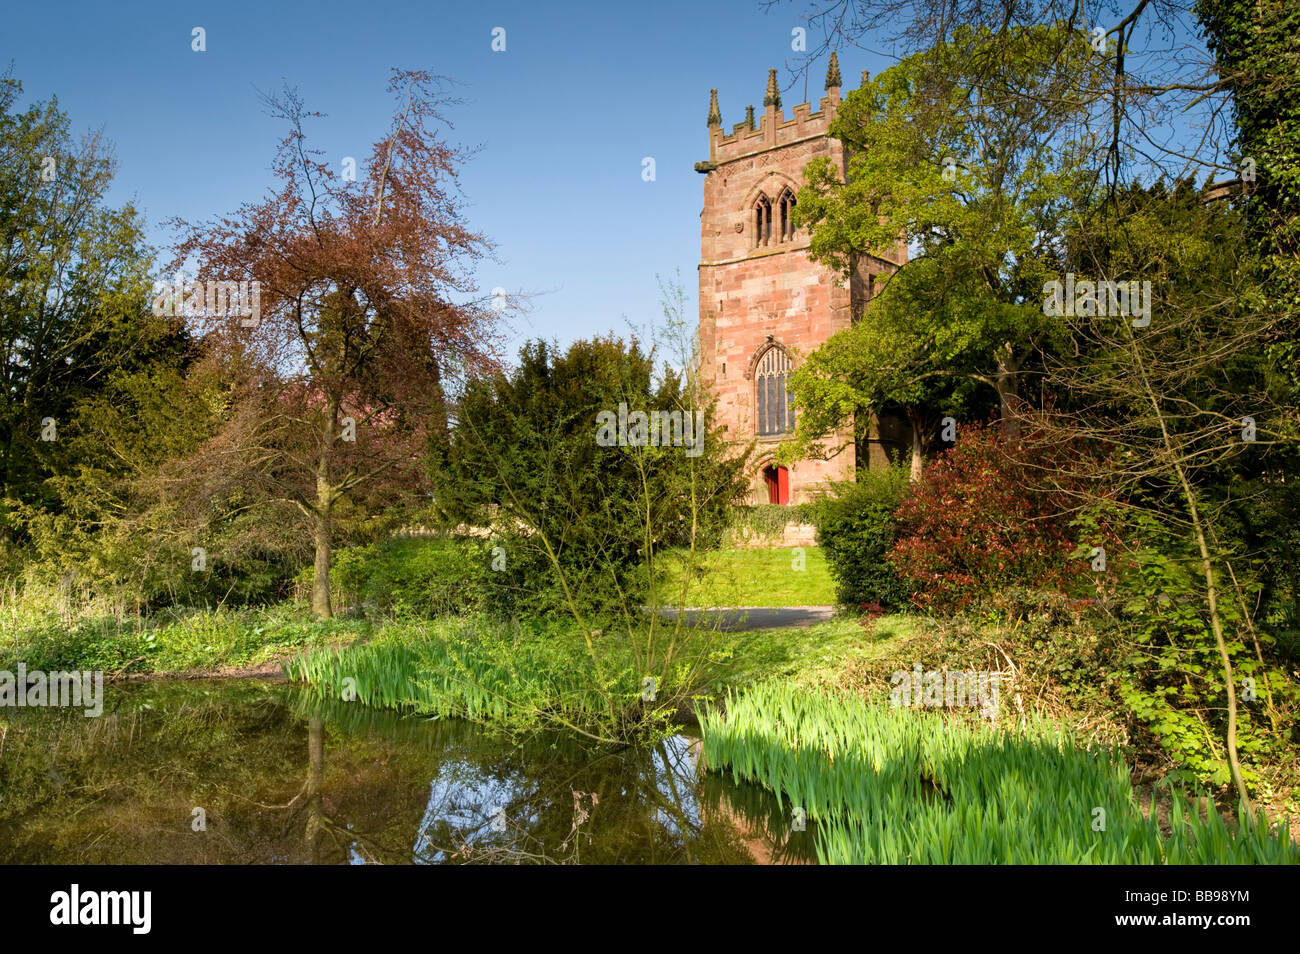 St Bertoline la chiesa parrocchiale in primavera, Barthomley, vicino a Nantwich, Cheshire, Inghilterra, Regno Unito Foto Stock